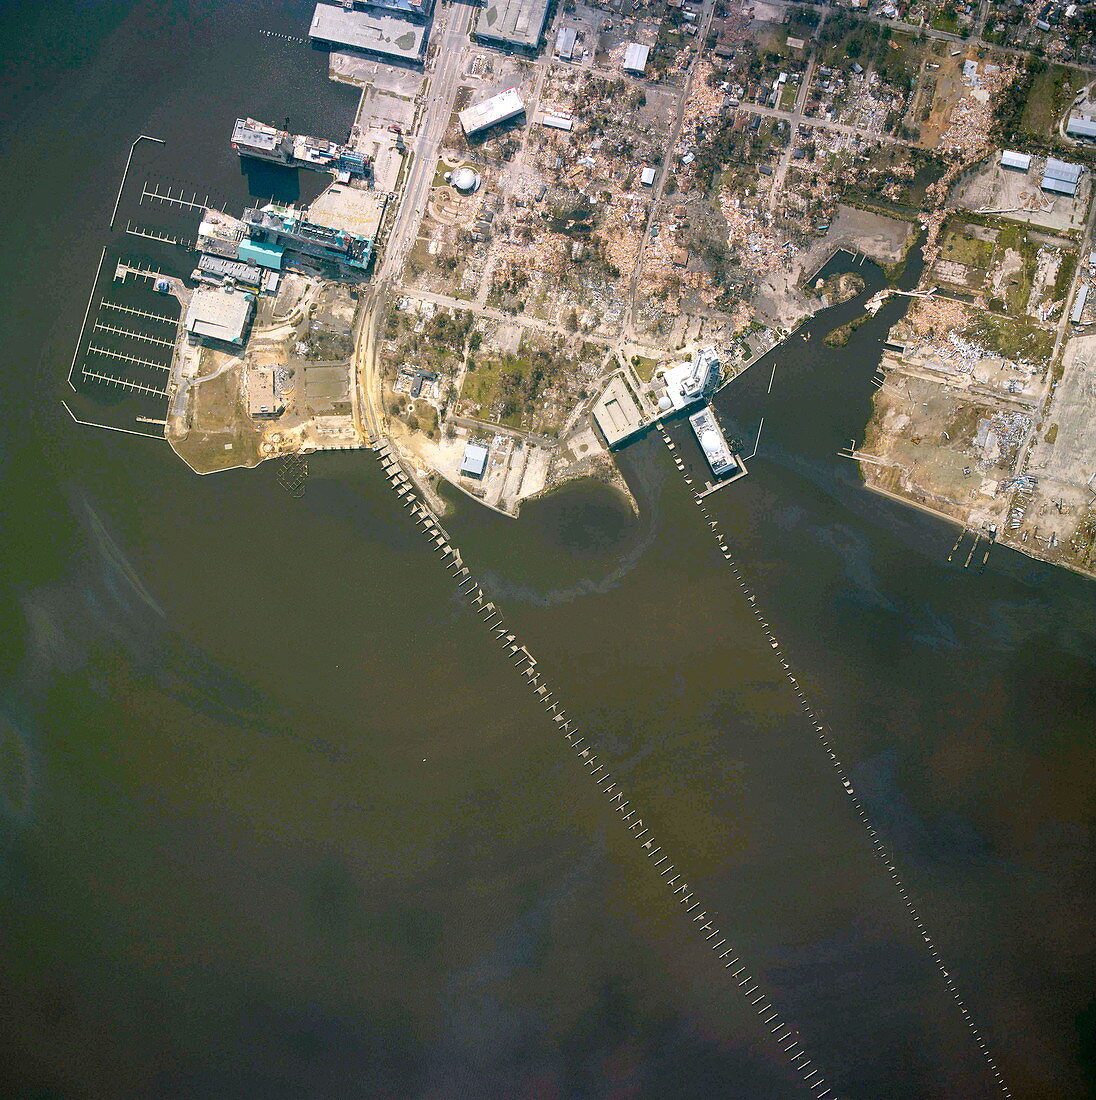 Biloxi after Hurricane Katrina